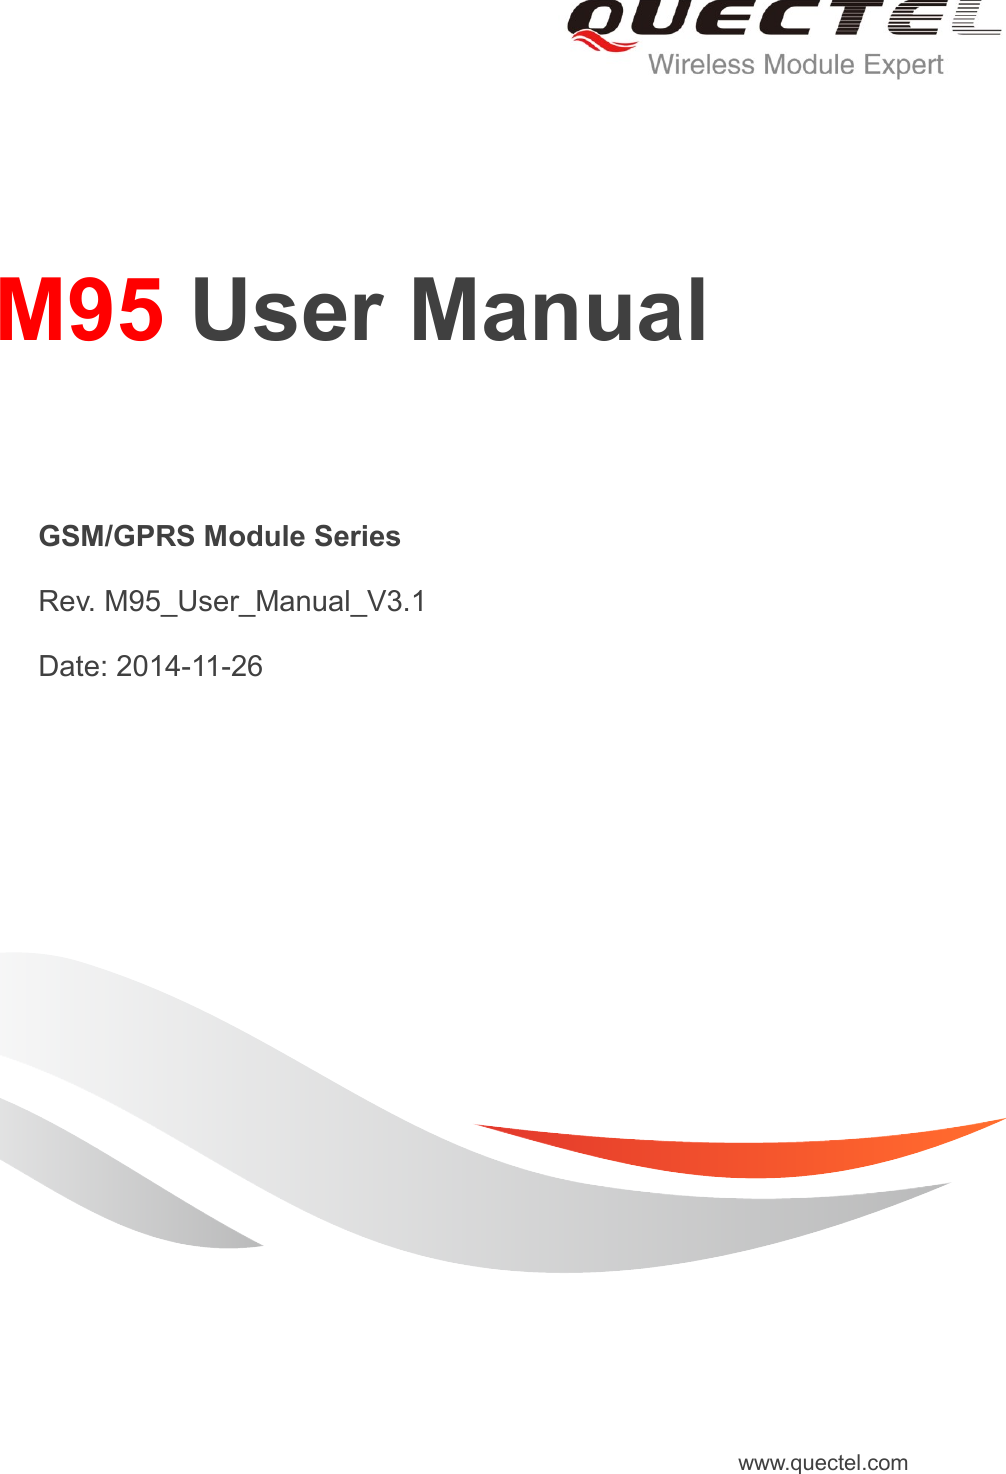     M95 User Manual   GSM/GPRS Module Series   Rev. M95_User_Manual_V3.1   Date: 2014-11-26 www.quectel.com 